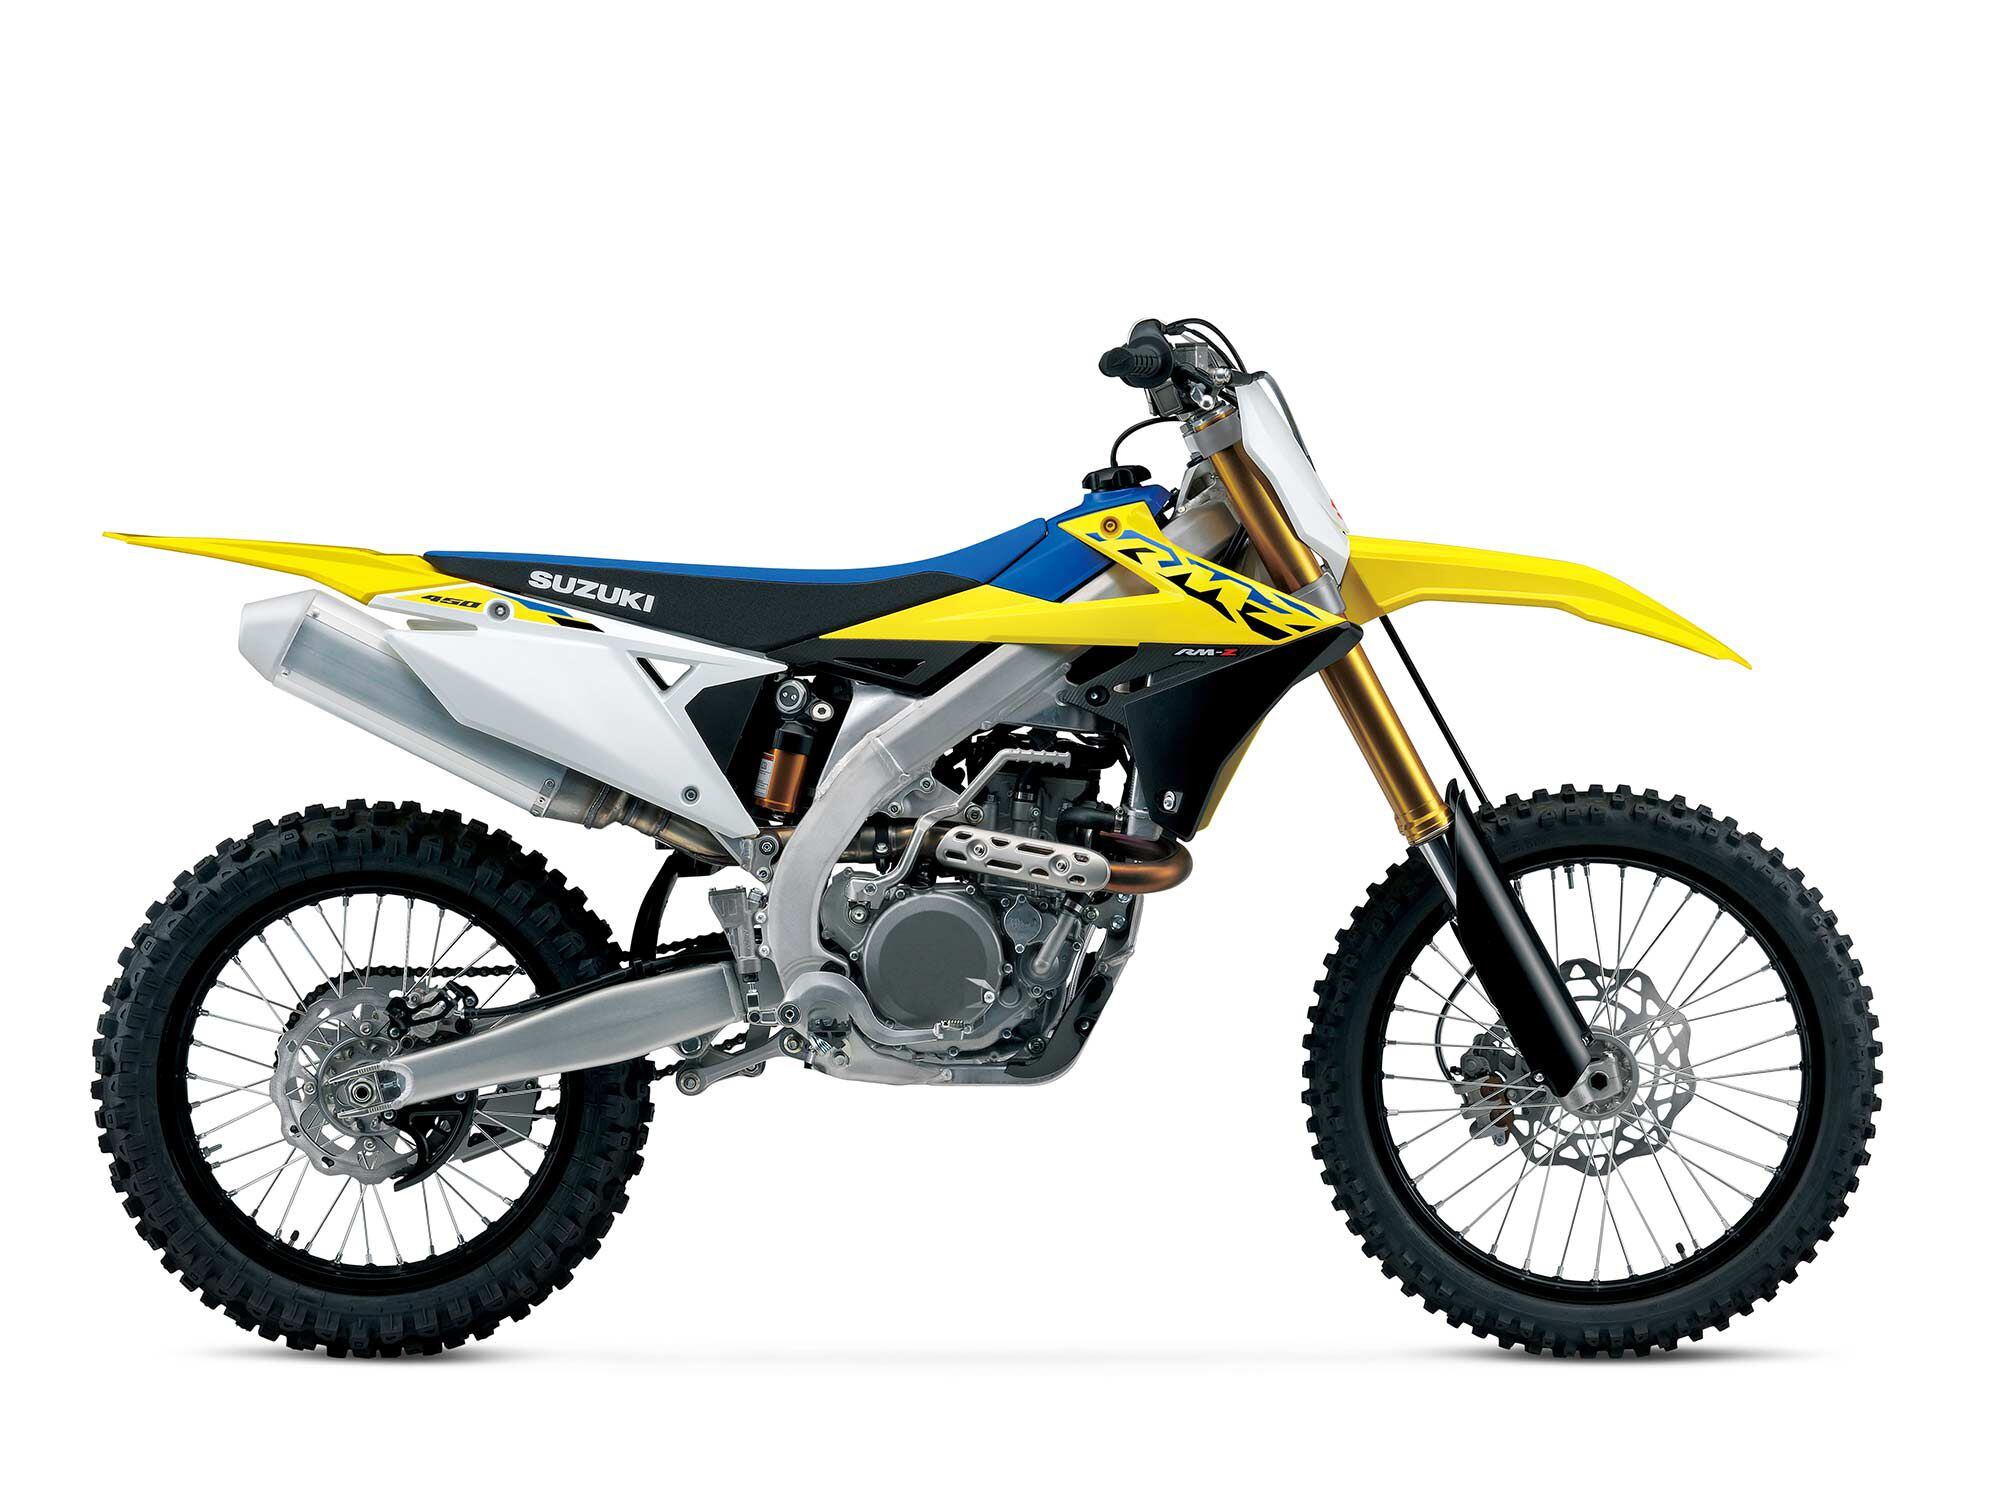 Suzuki’s RM-Z450 is another budget-friendly motocross bike.